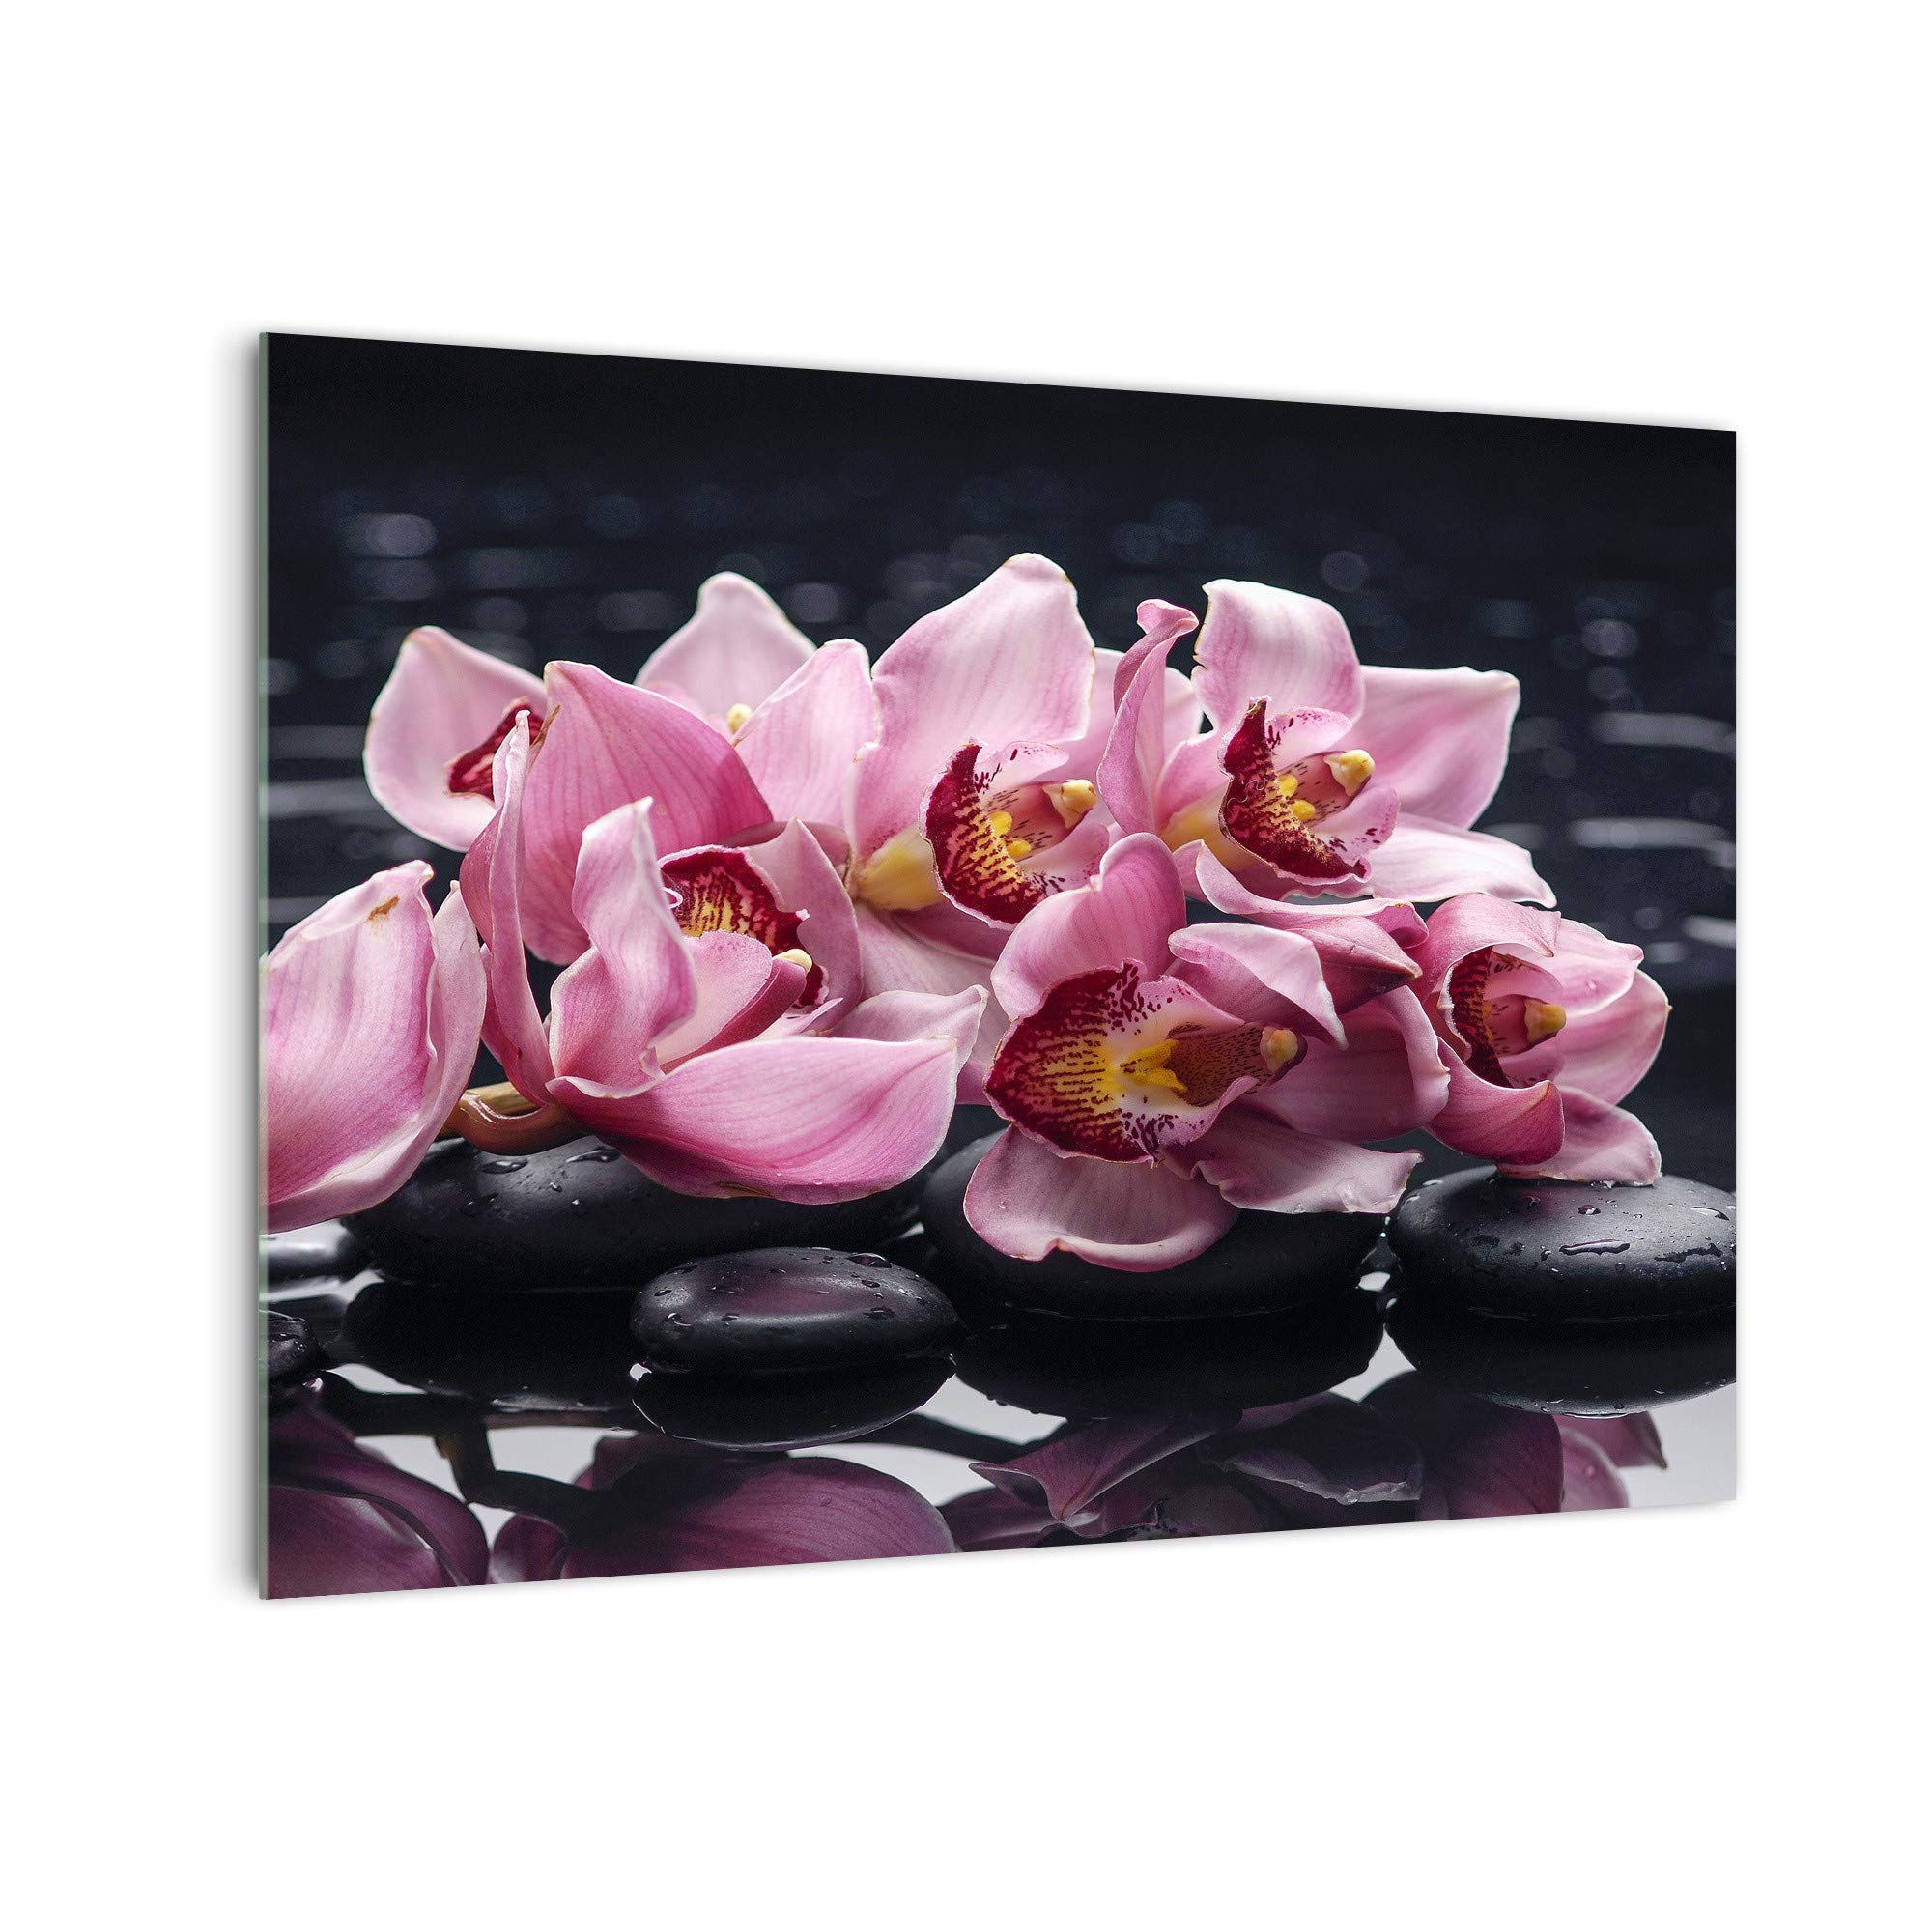 DekoGlas Küchenrückwand 'Blüten auf Stein' in div. Größen, Glas-Rückwand, Wandpaneele, Spritzschutz & Fliesenspiegel